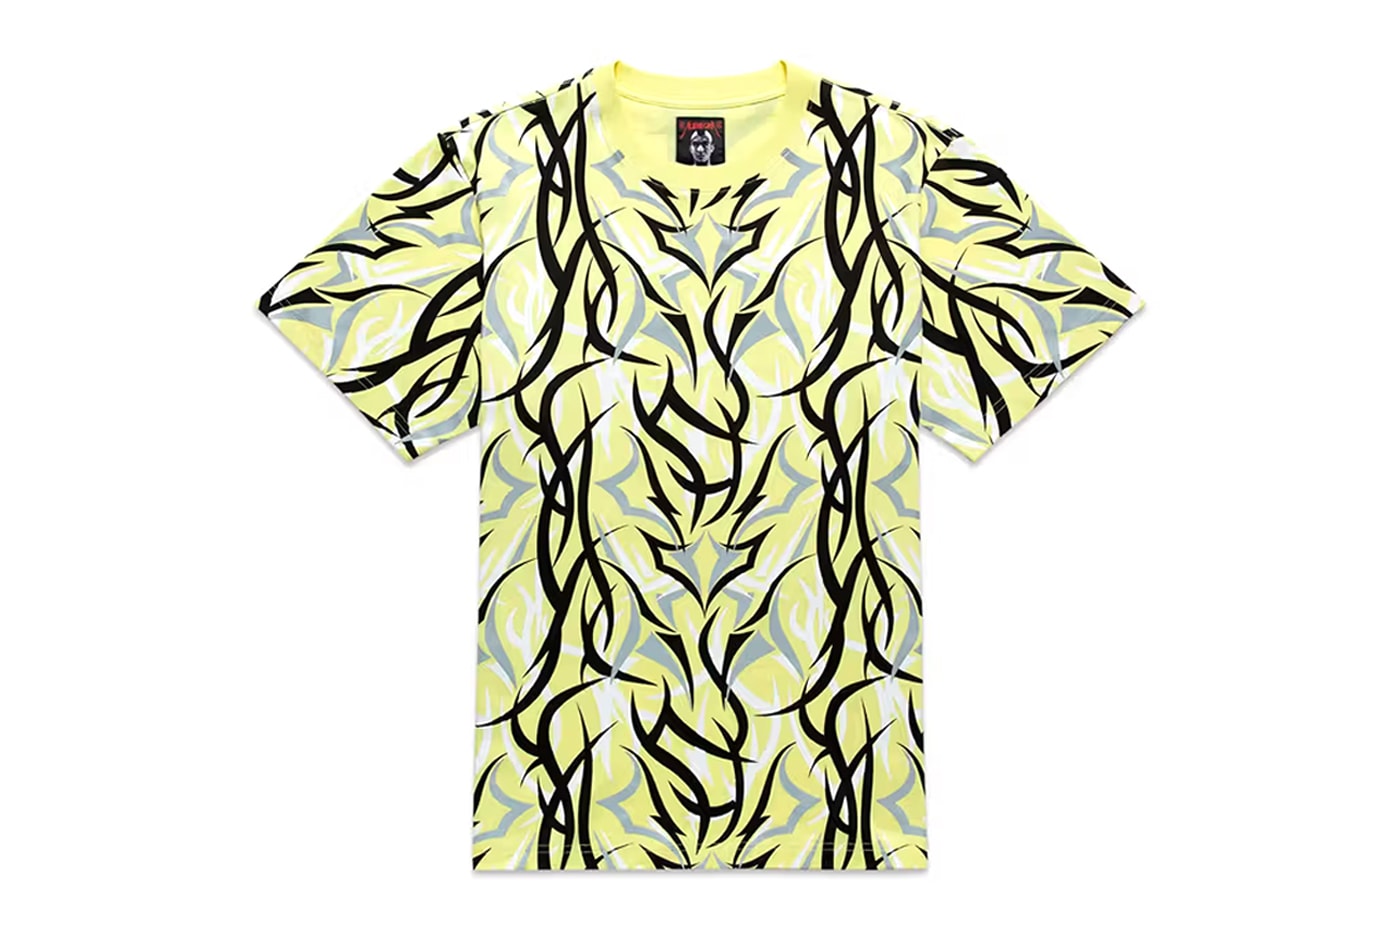 CLOT Alienegra Camo Yellow Reflective Tee Pre-Order Release Info Date Buy Price Edison Chen